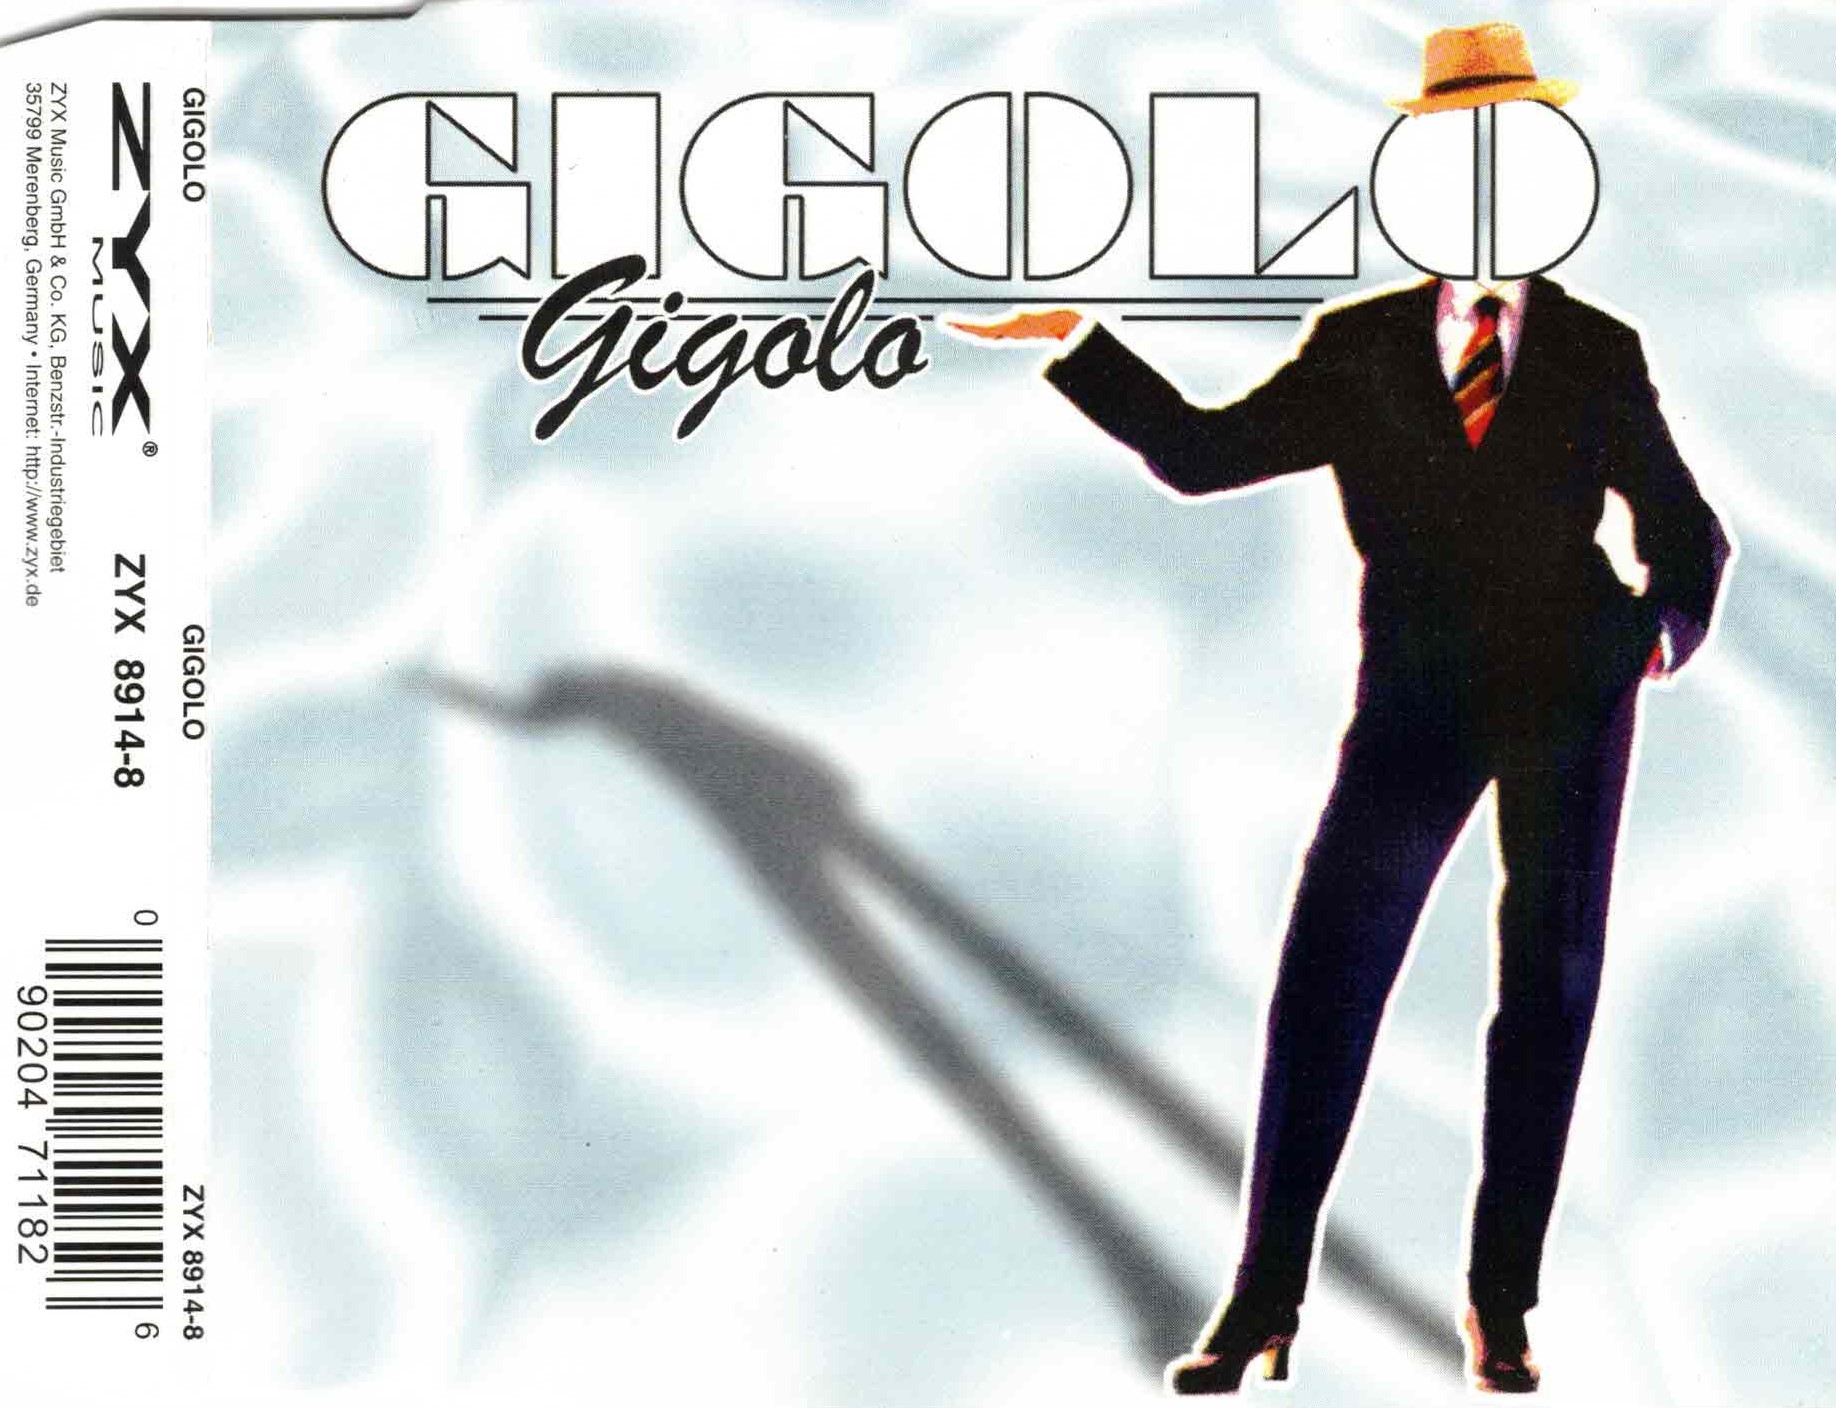 Gigolo - Gigolo (CD Maxi - Single) (ZYX 8914-8) (1998)